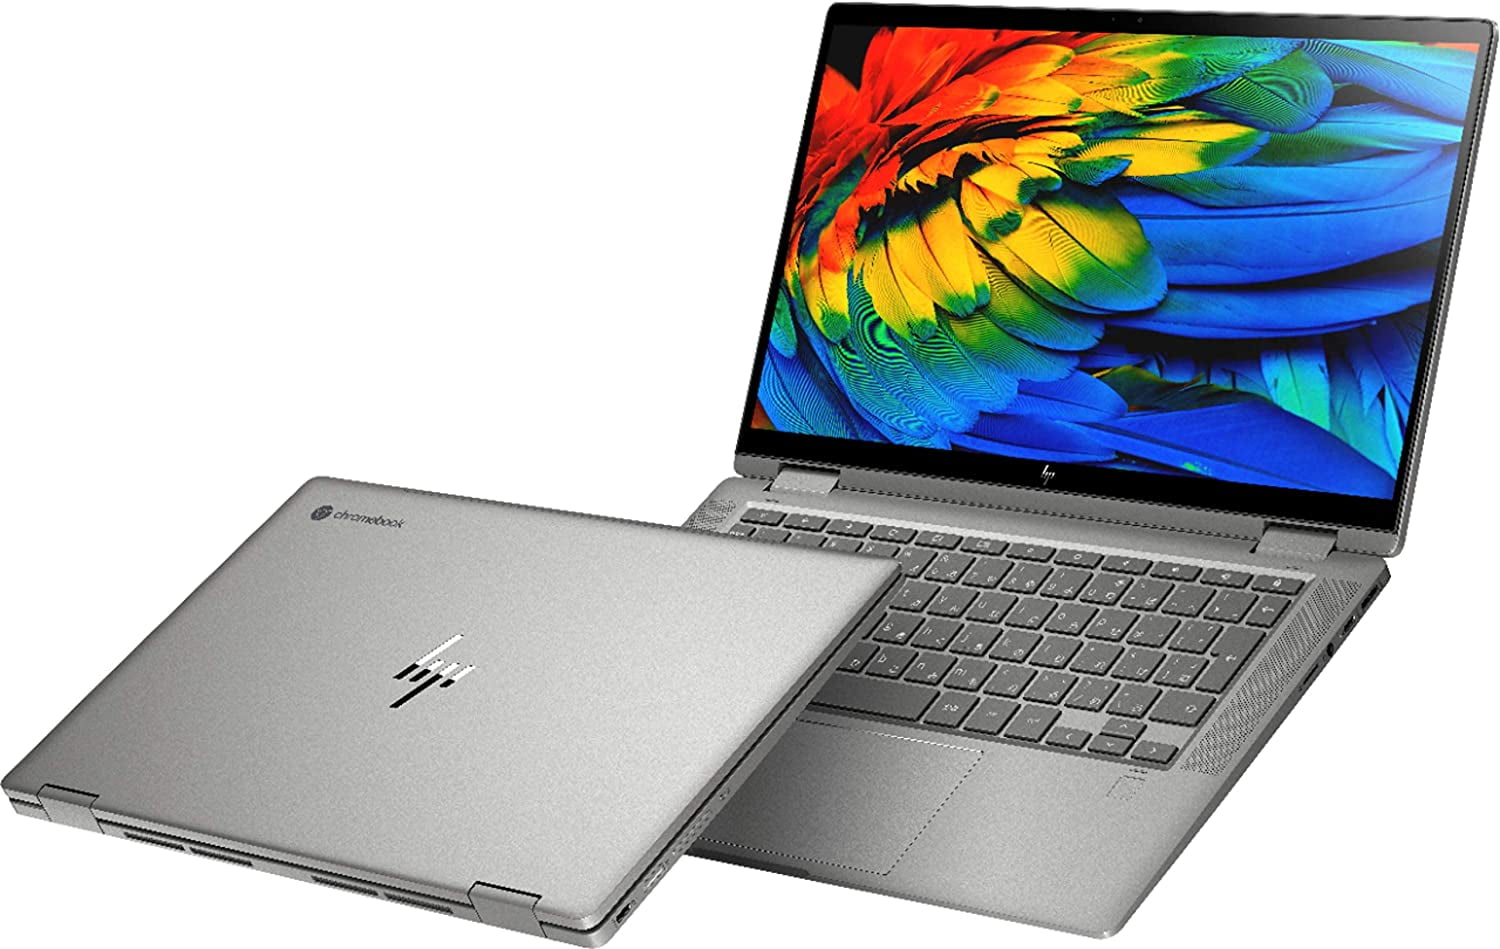 HP Chromebook x360 14c-ca0053dx - Flip design - Core i3 10110U / 2.1 GHz -  Chrome OS - 8 GB RAM - Walmart.com